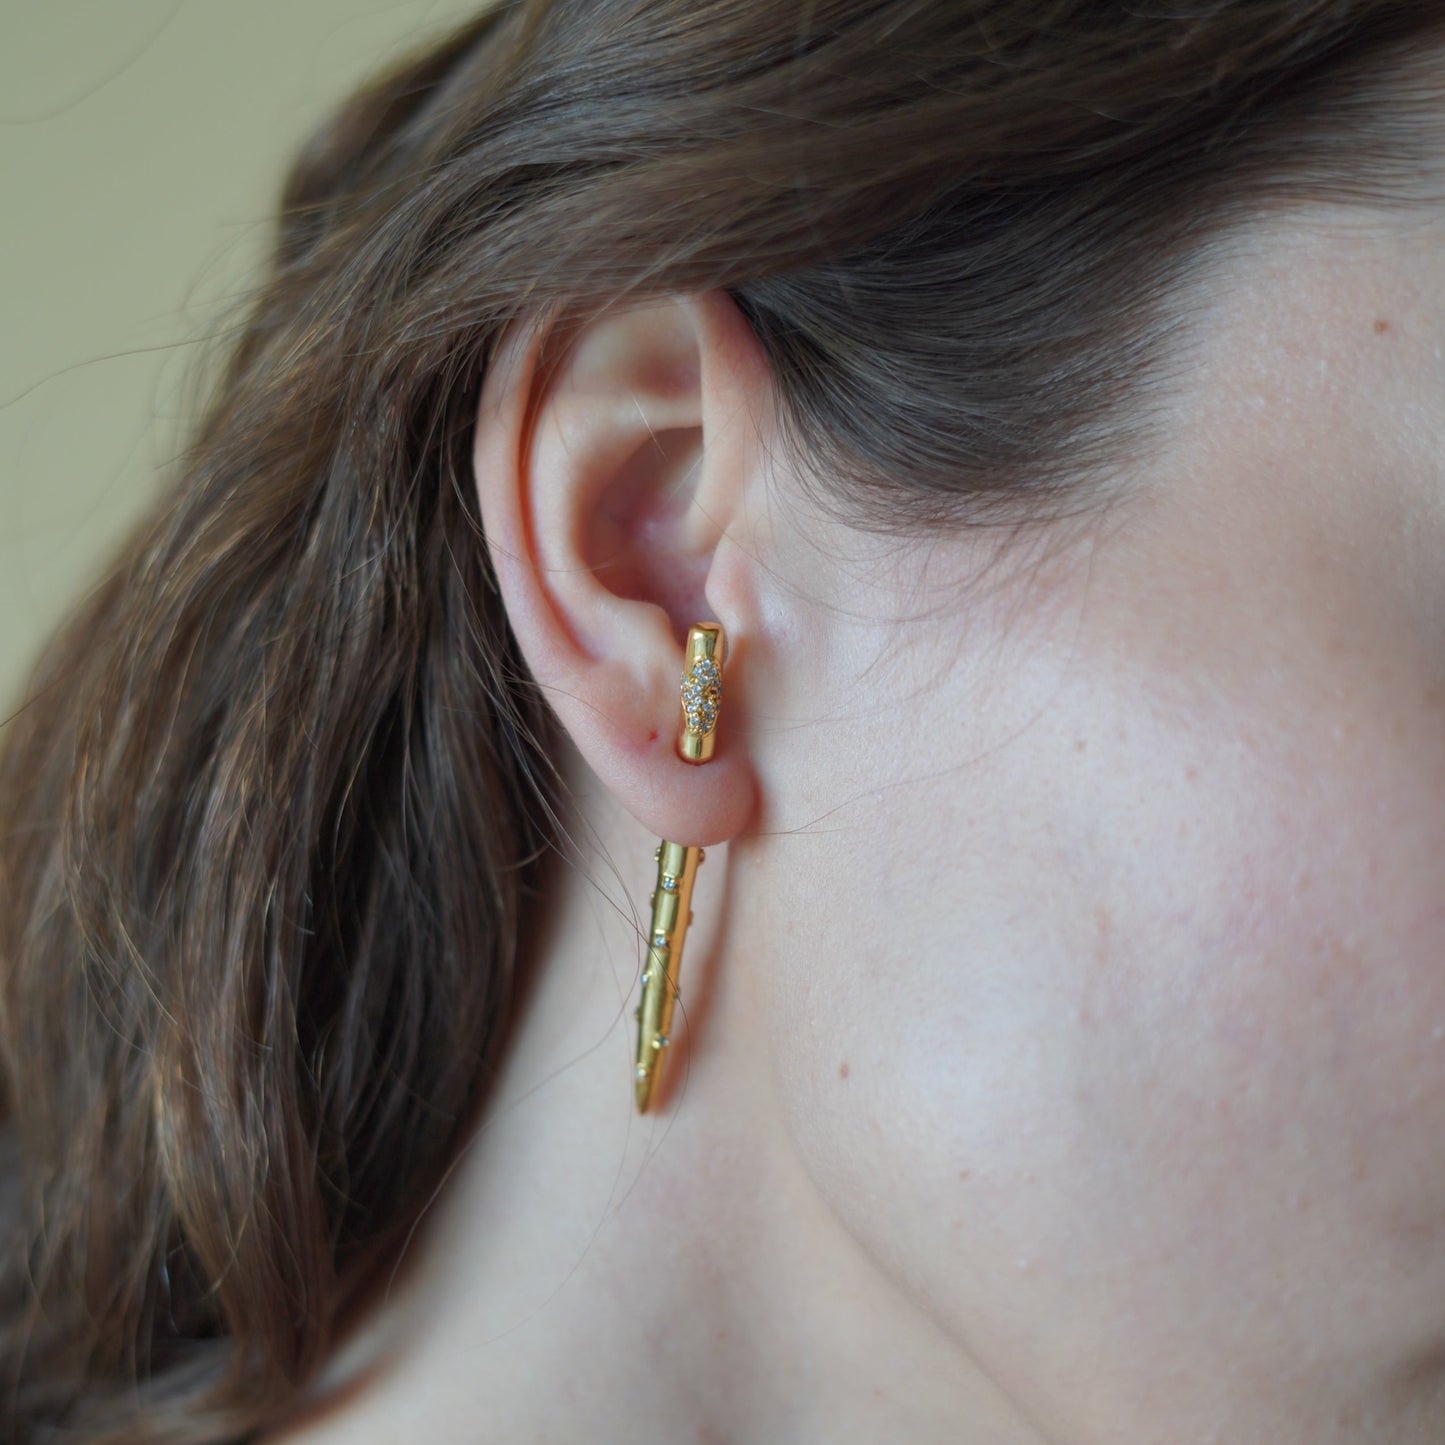 Studded Ear Pins